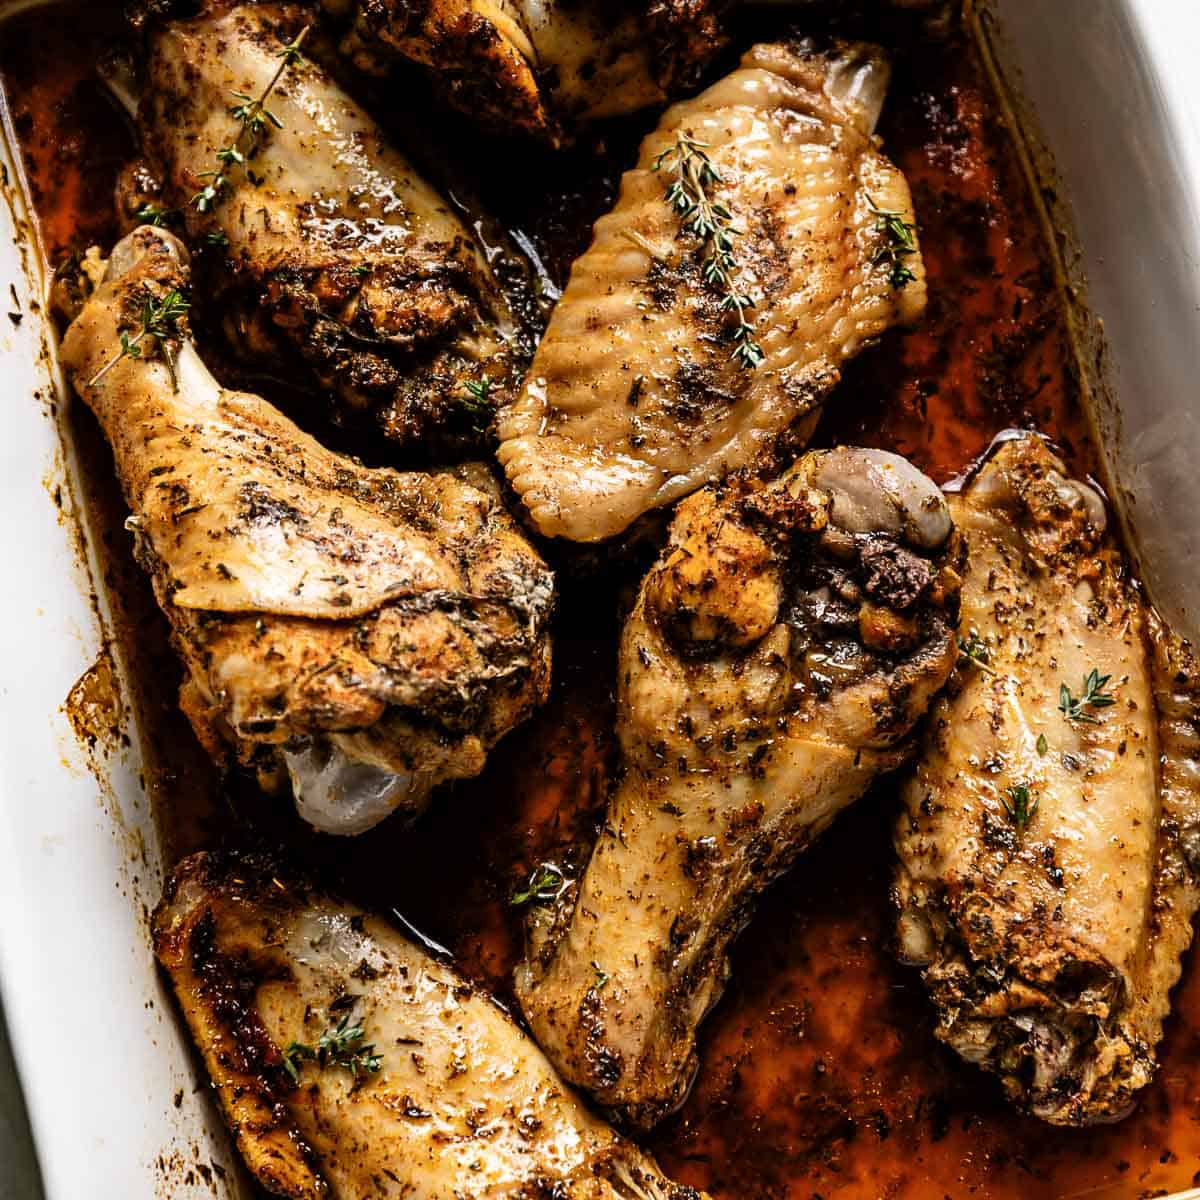 Turkey Wings Per kg, Fresh Turkey, Fresh Meat & Poultry